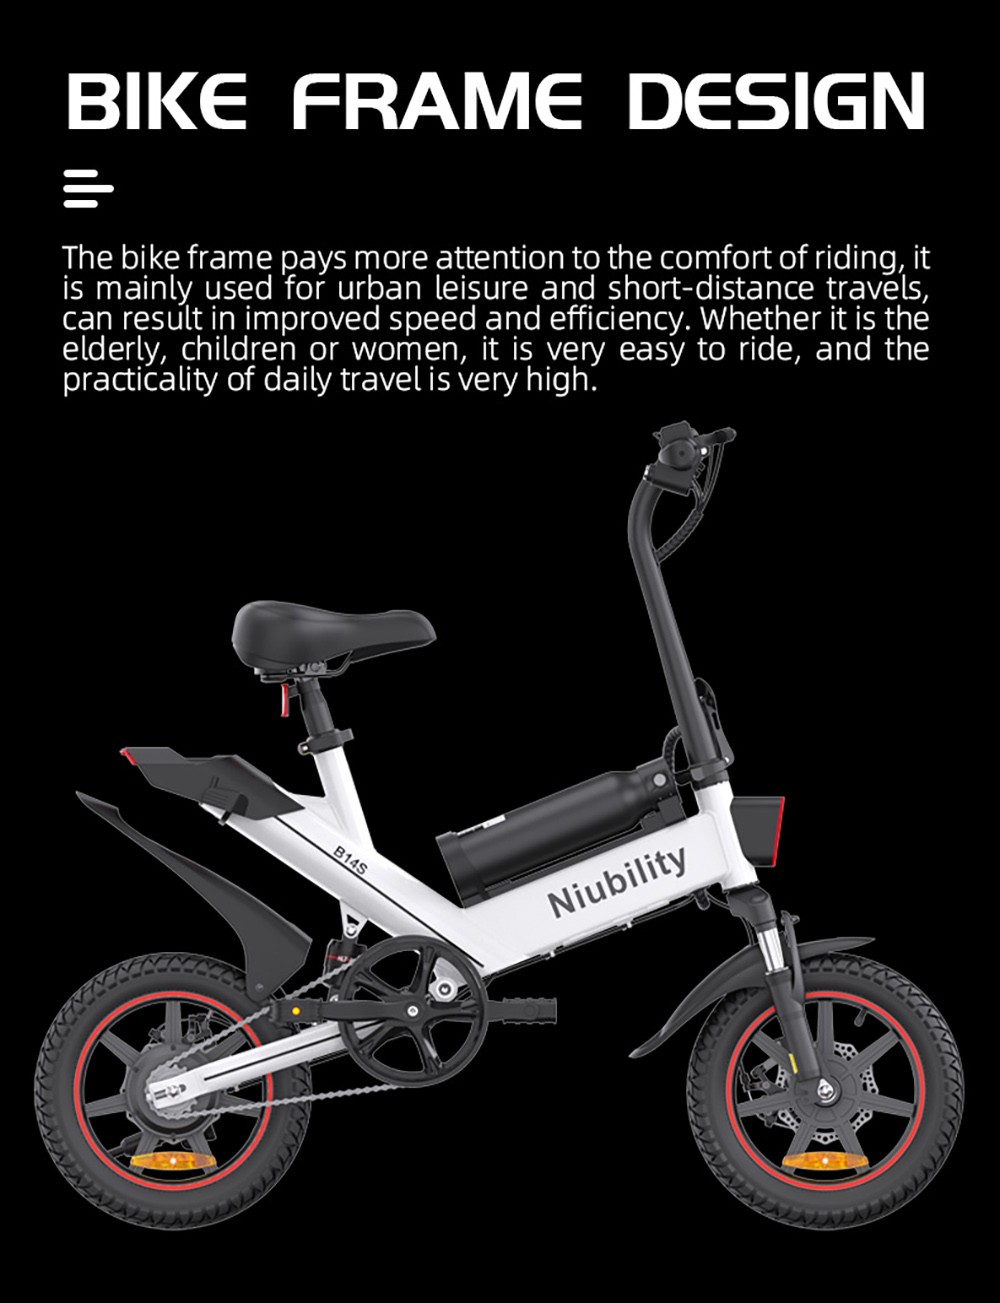 NIUBILITY B14S Electric Bike 14*2.125 inch Tire 48V 400W Motor 32km/h Max Speed 8.7Ah + 6.4Ah Dvojitá batéria Dvojitá kotúčová brzda - biela